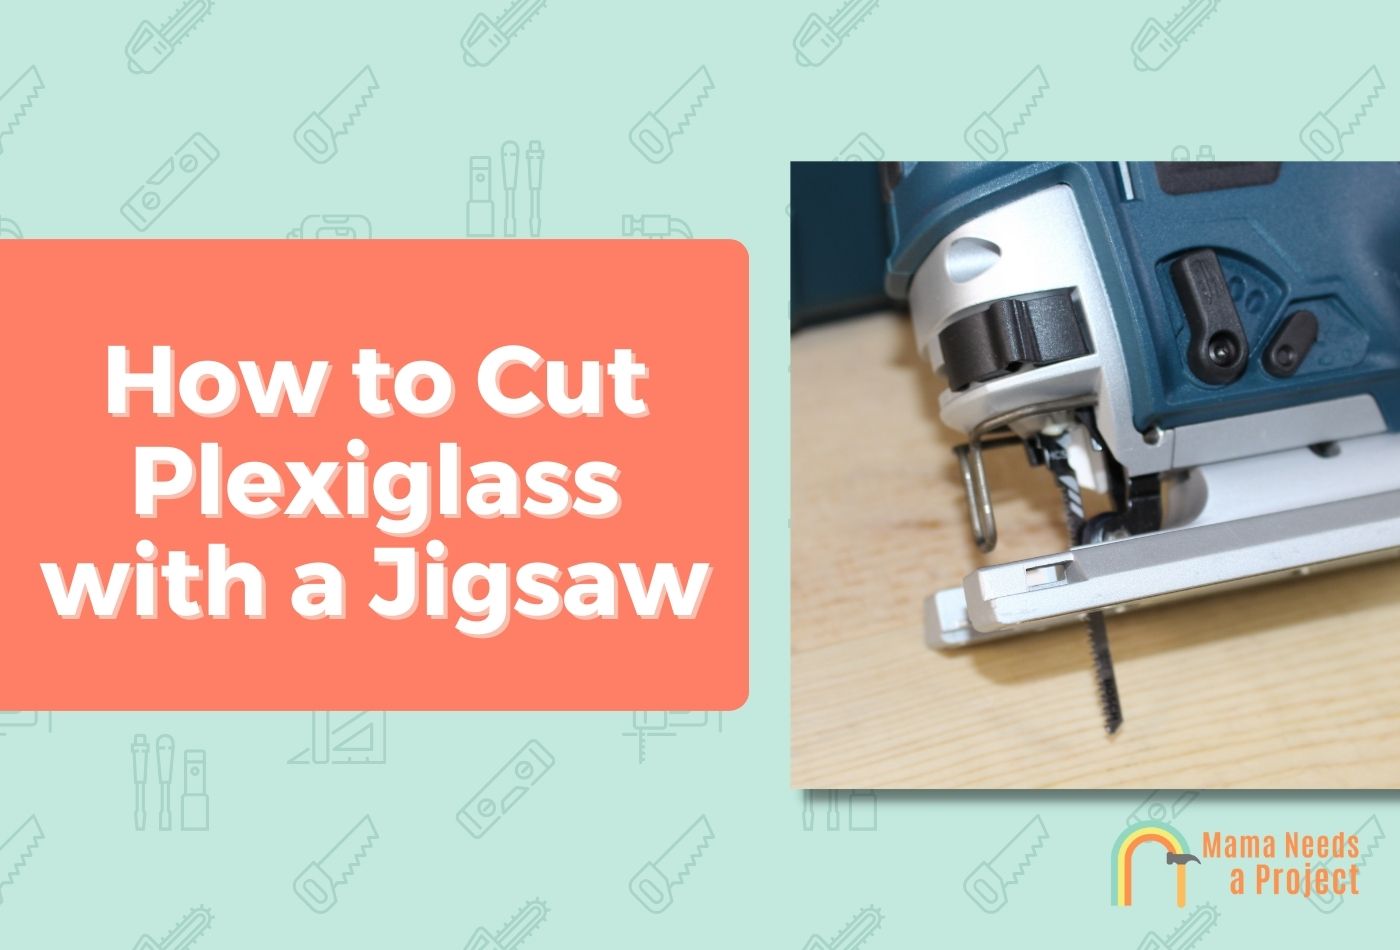 How to Cut Plexiglass with a Jigsaw